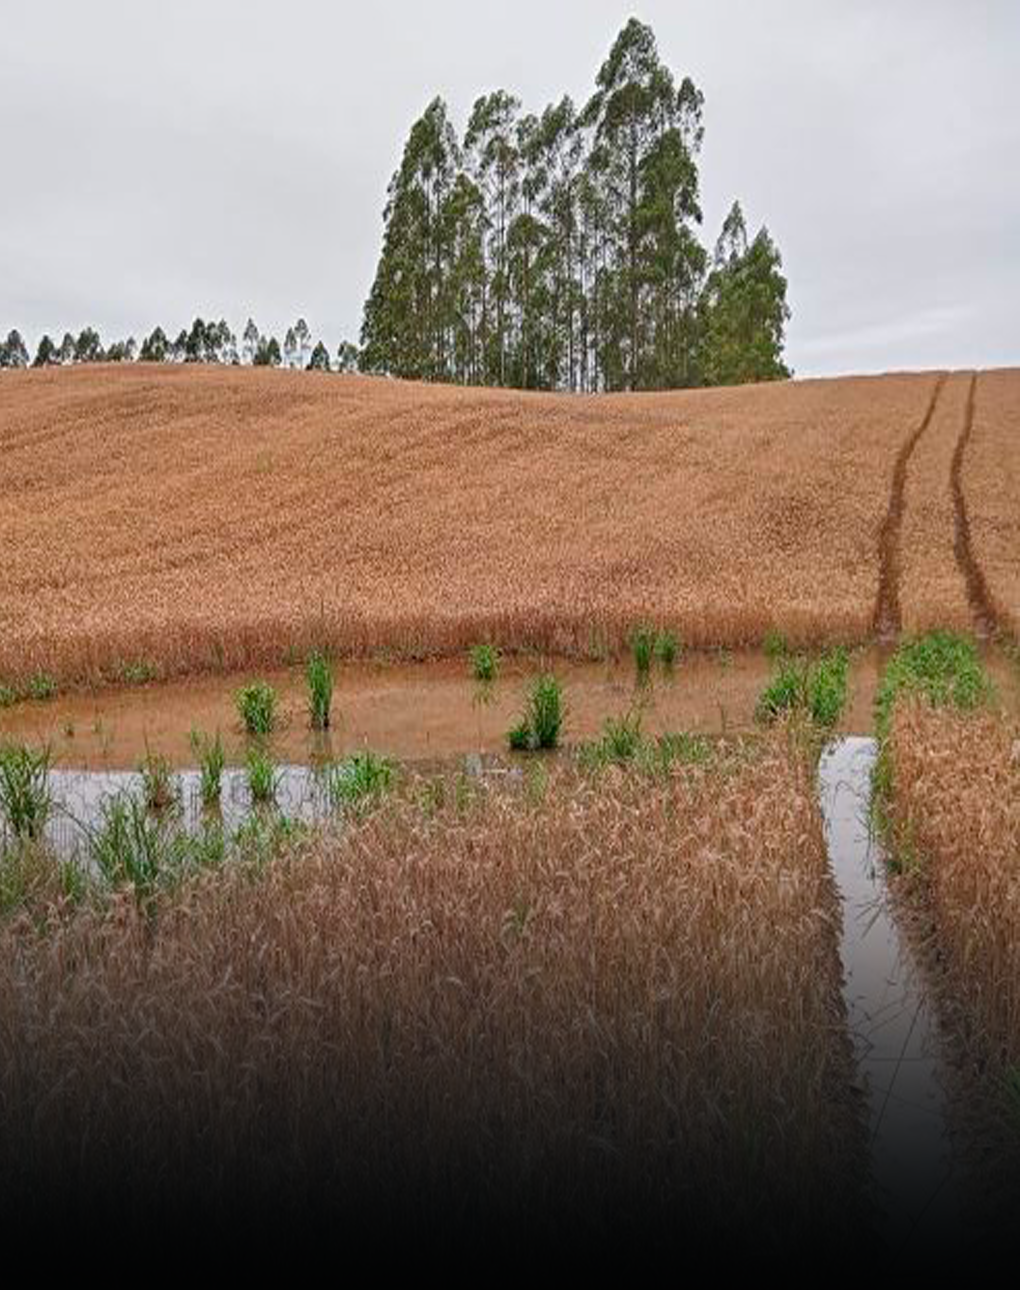 Chuvas em SC: Epagri/Cepa estima redução de 28% na produção de trigo no Estado